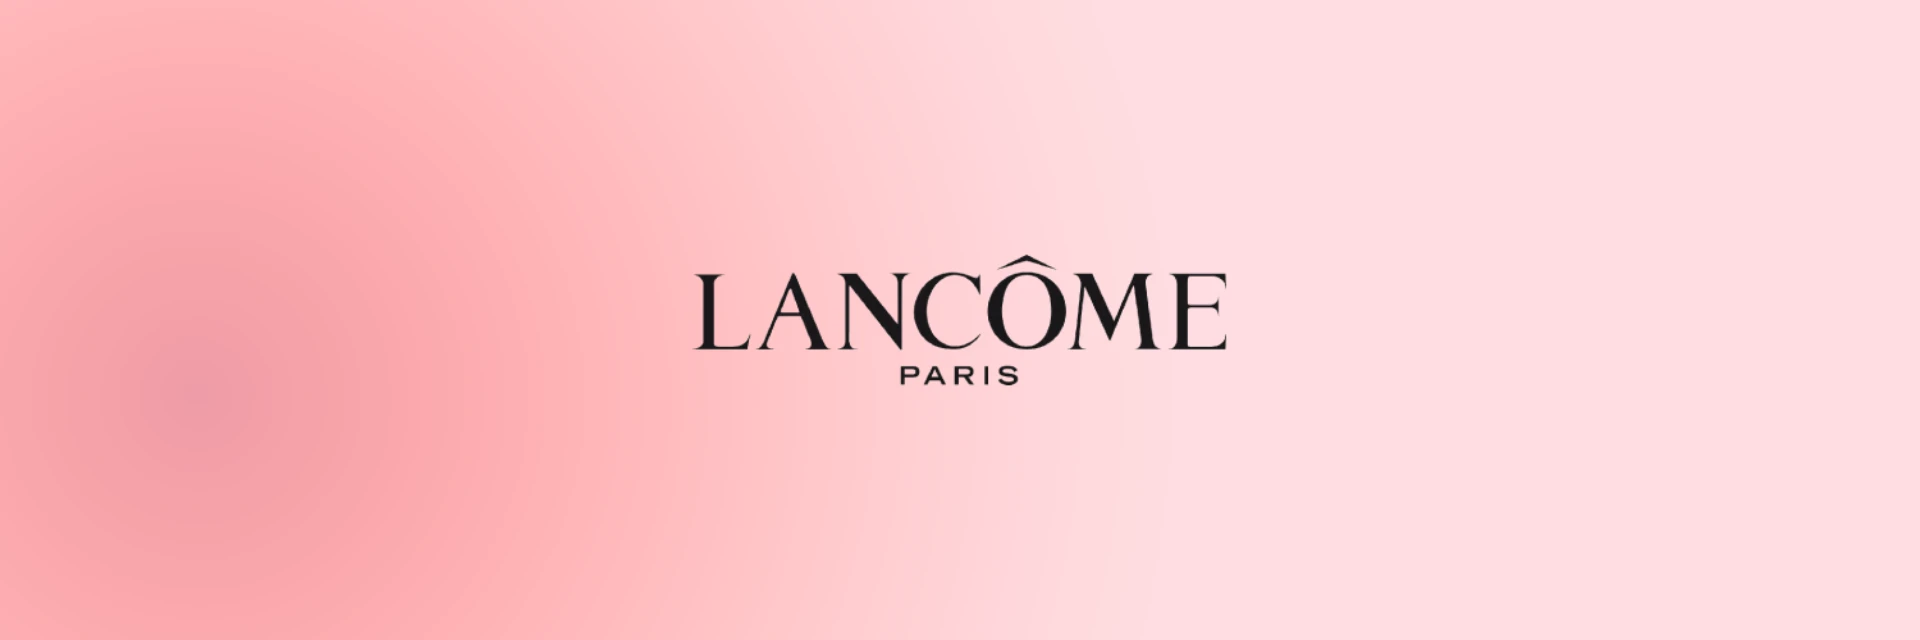 Lancome perfume brand banner